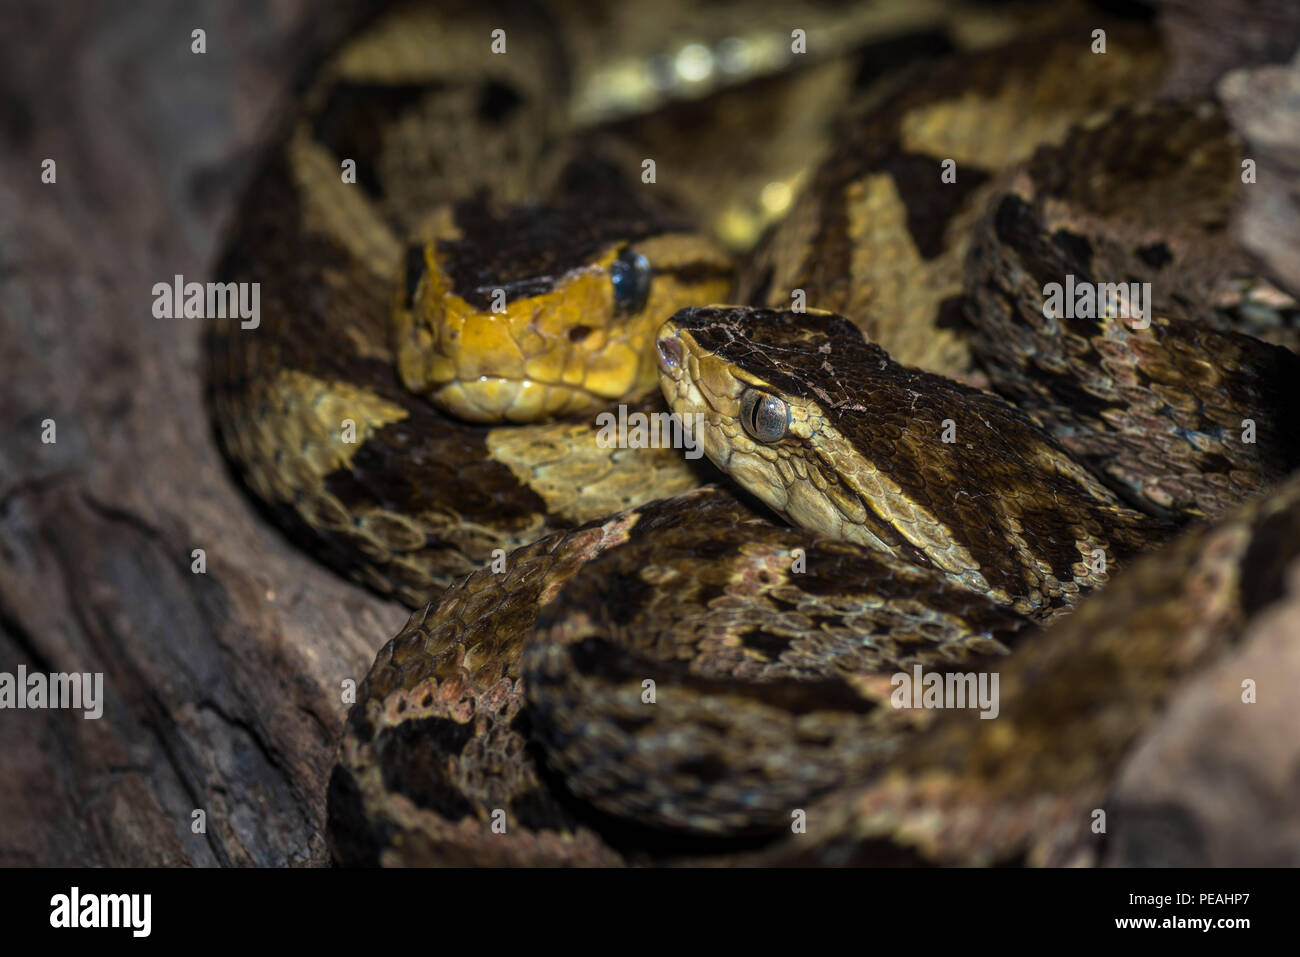 2 Bothrops asper ou aussi appelé fer de lance des serpents image prise au Panama Banque D'Images